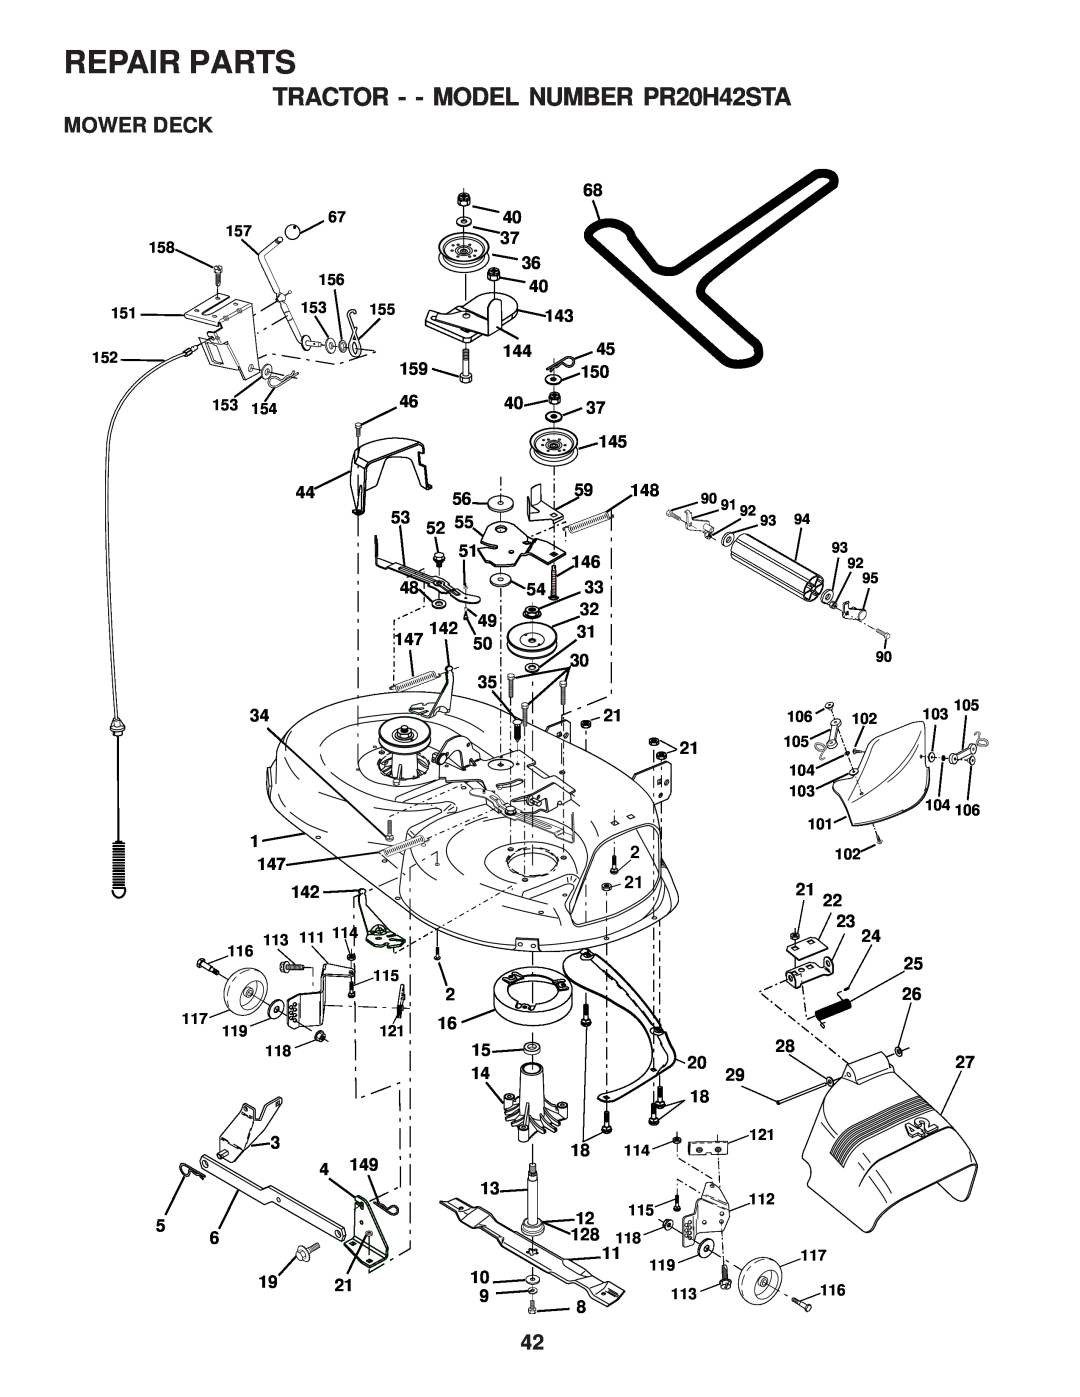 Poulan owner manual Mower Deck, Repair Parts, TRACTOR - - MODEL NUMBER PR20H42STA 